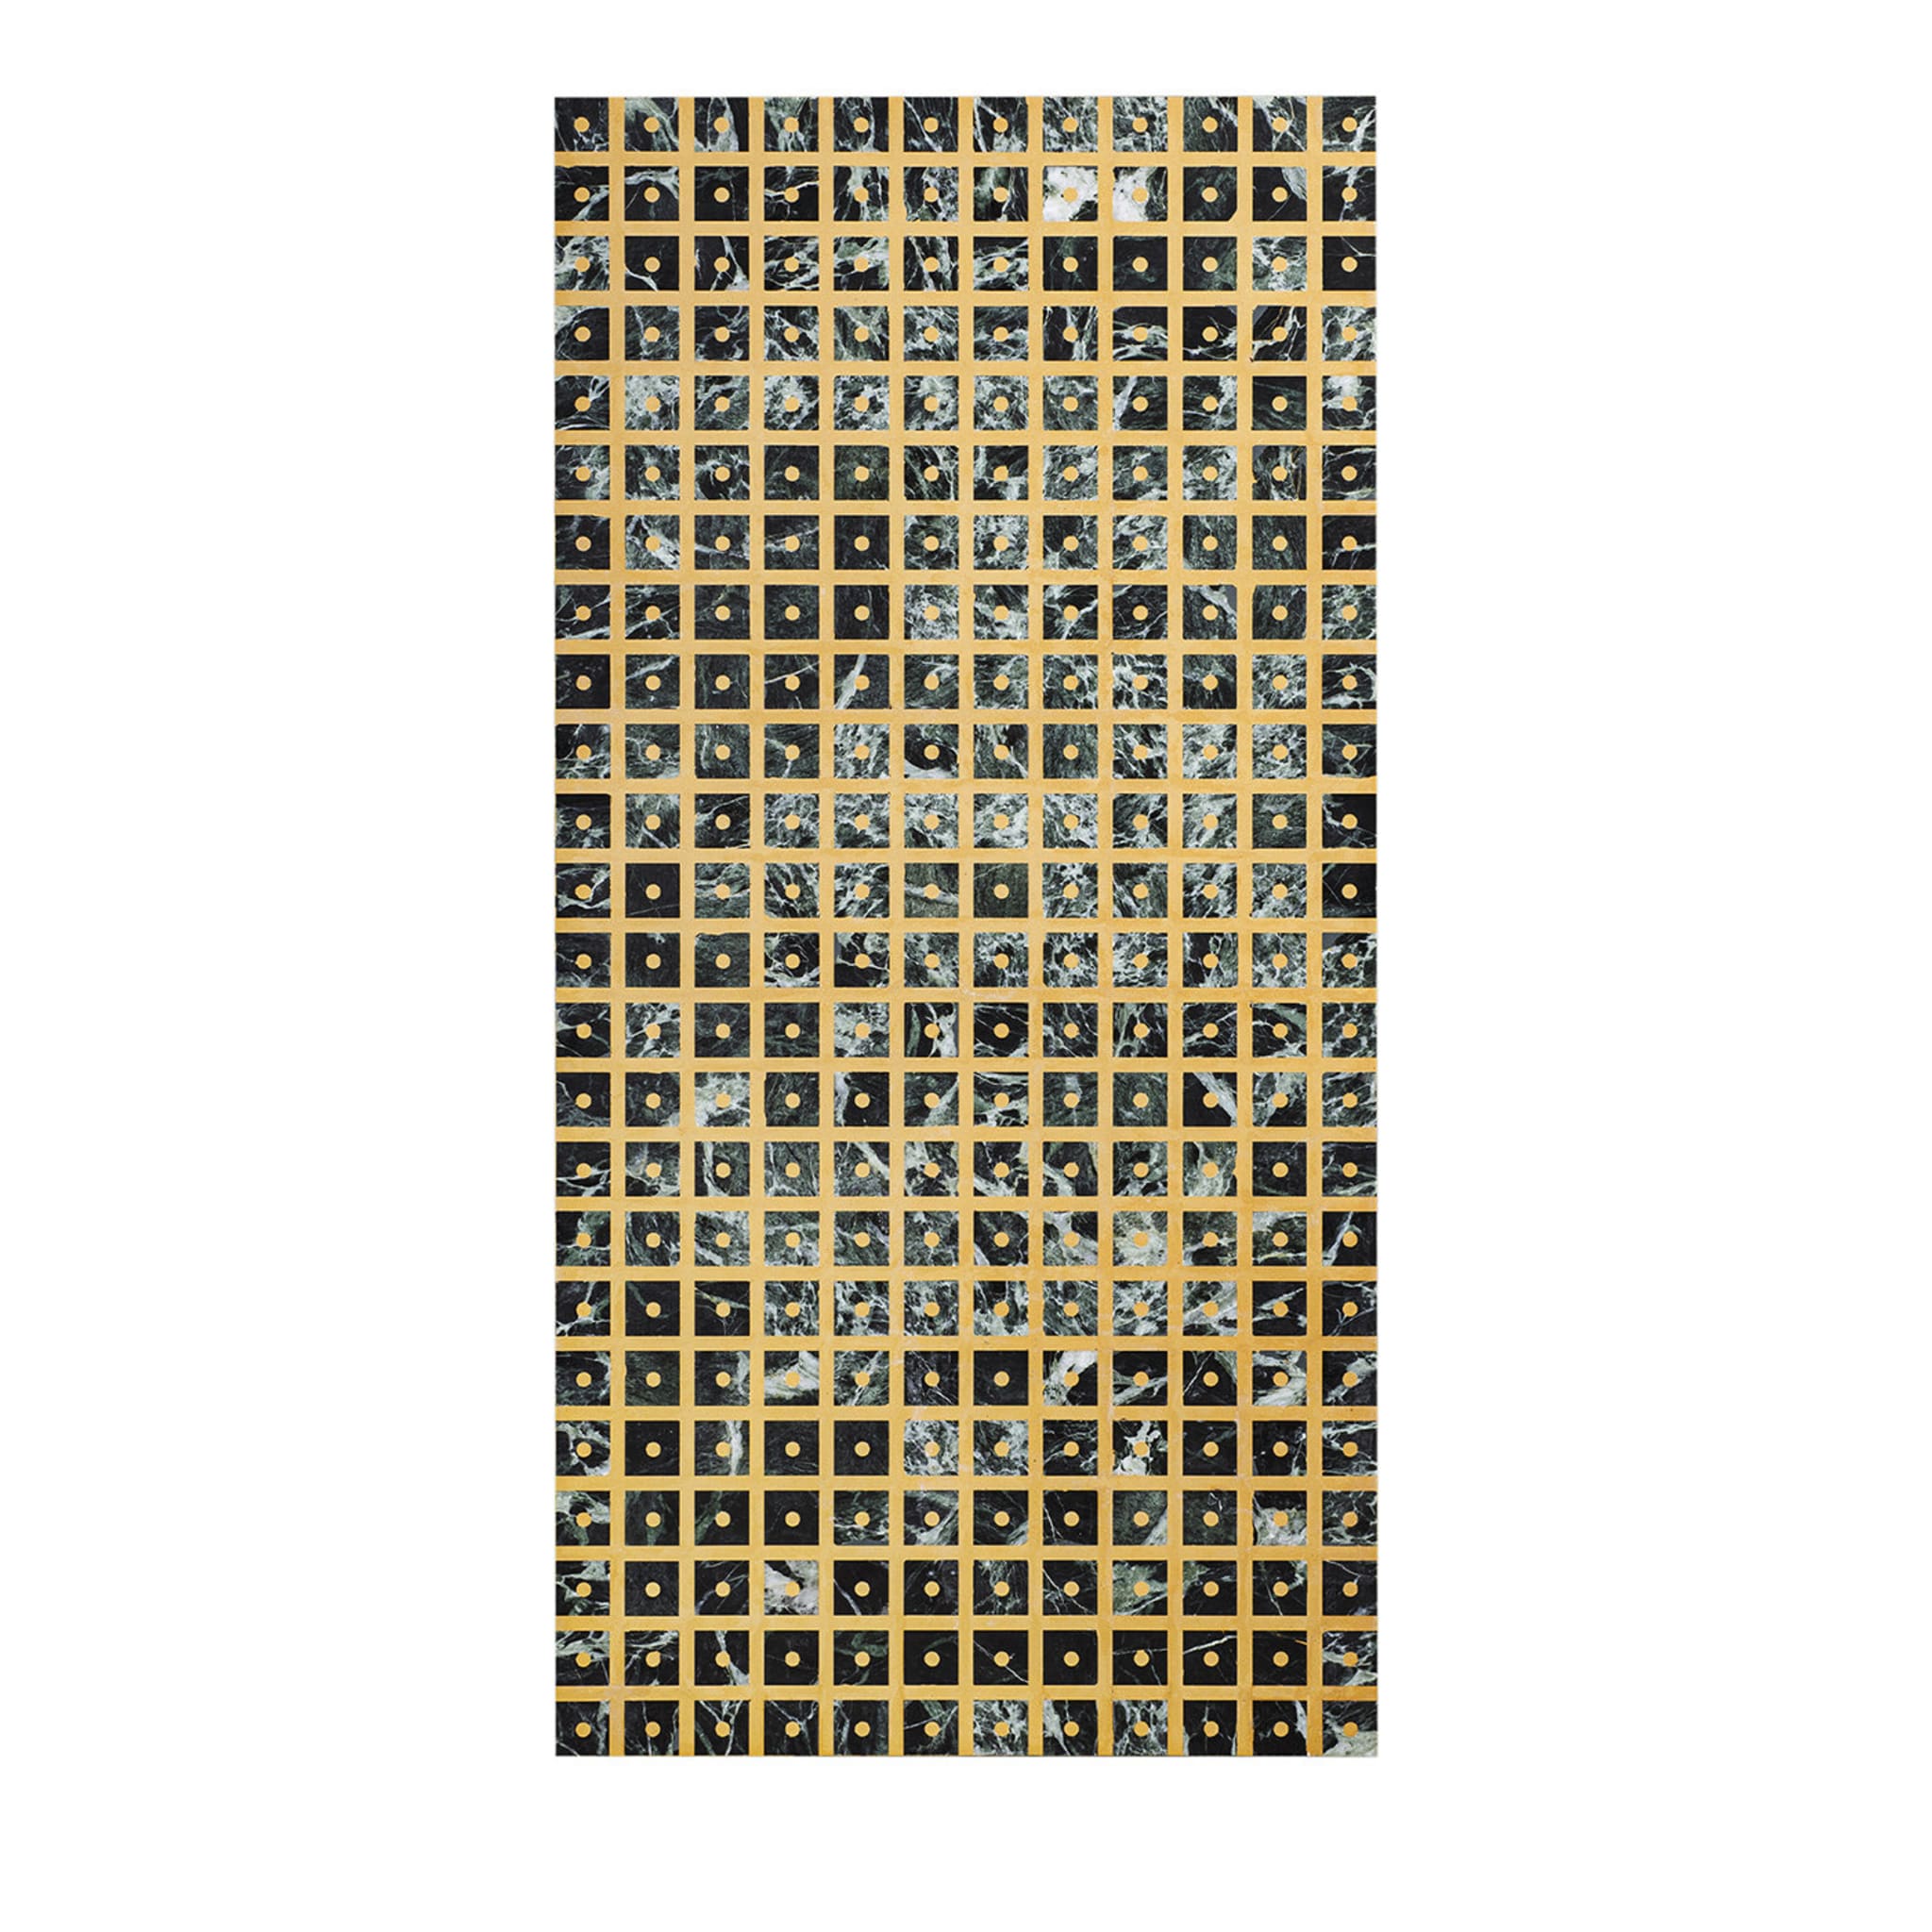 Standardgeometrien Quadrate Marmortafel von David/Nicolas - Hauptansicht